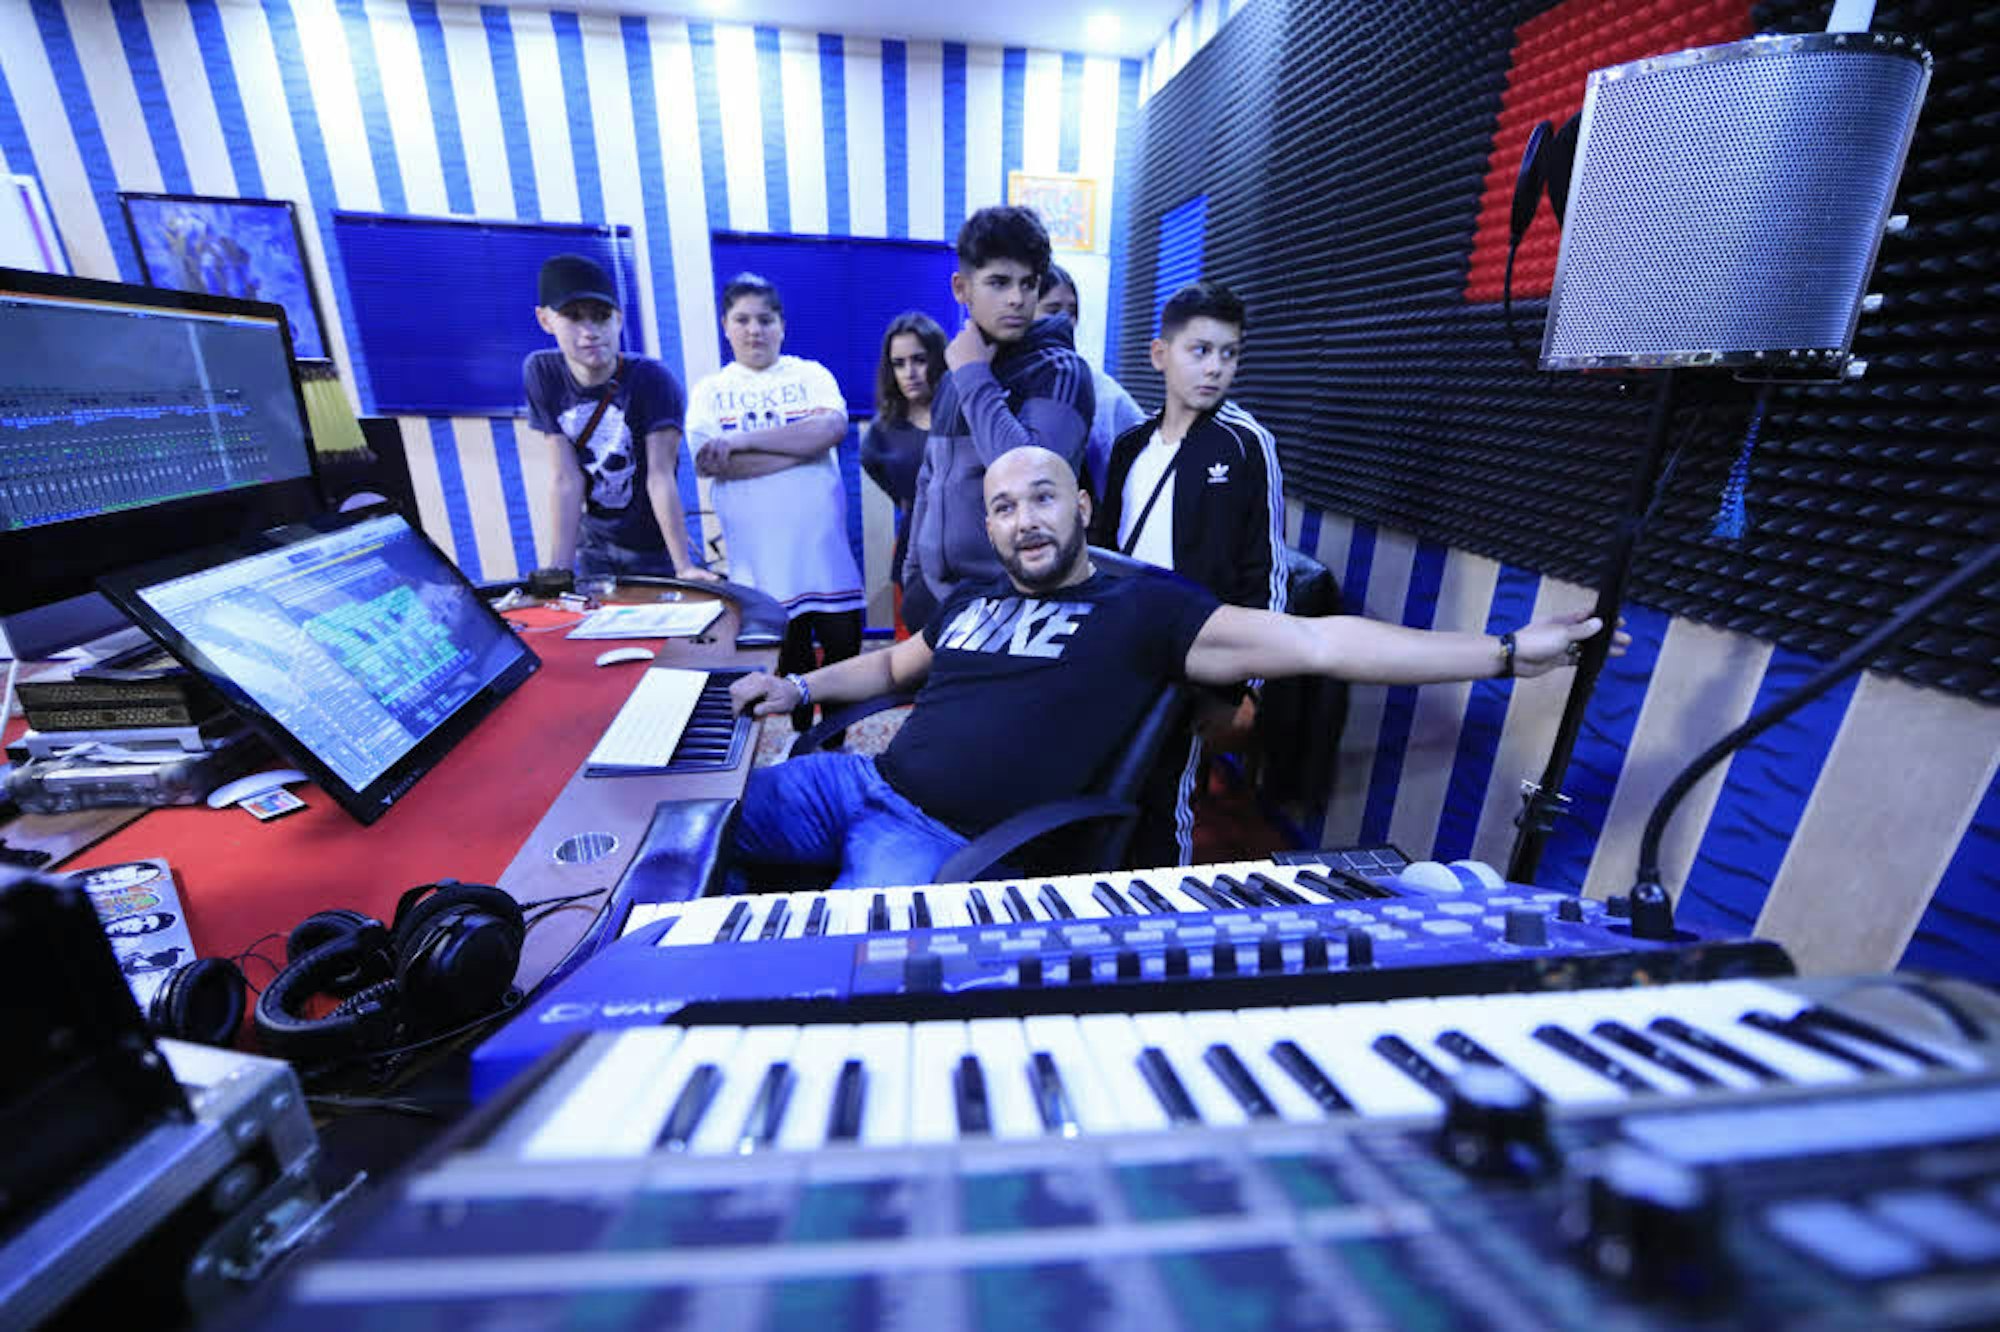 Der Rapper Serkan betreut die Jugendlichen in einem Tonstudio.